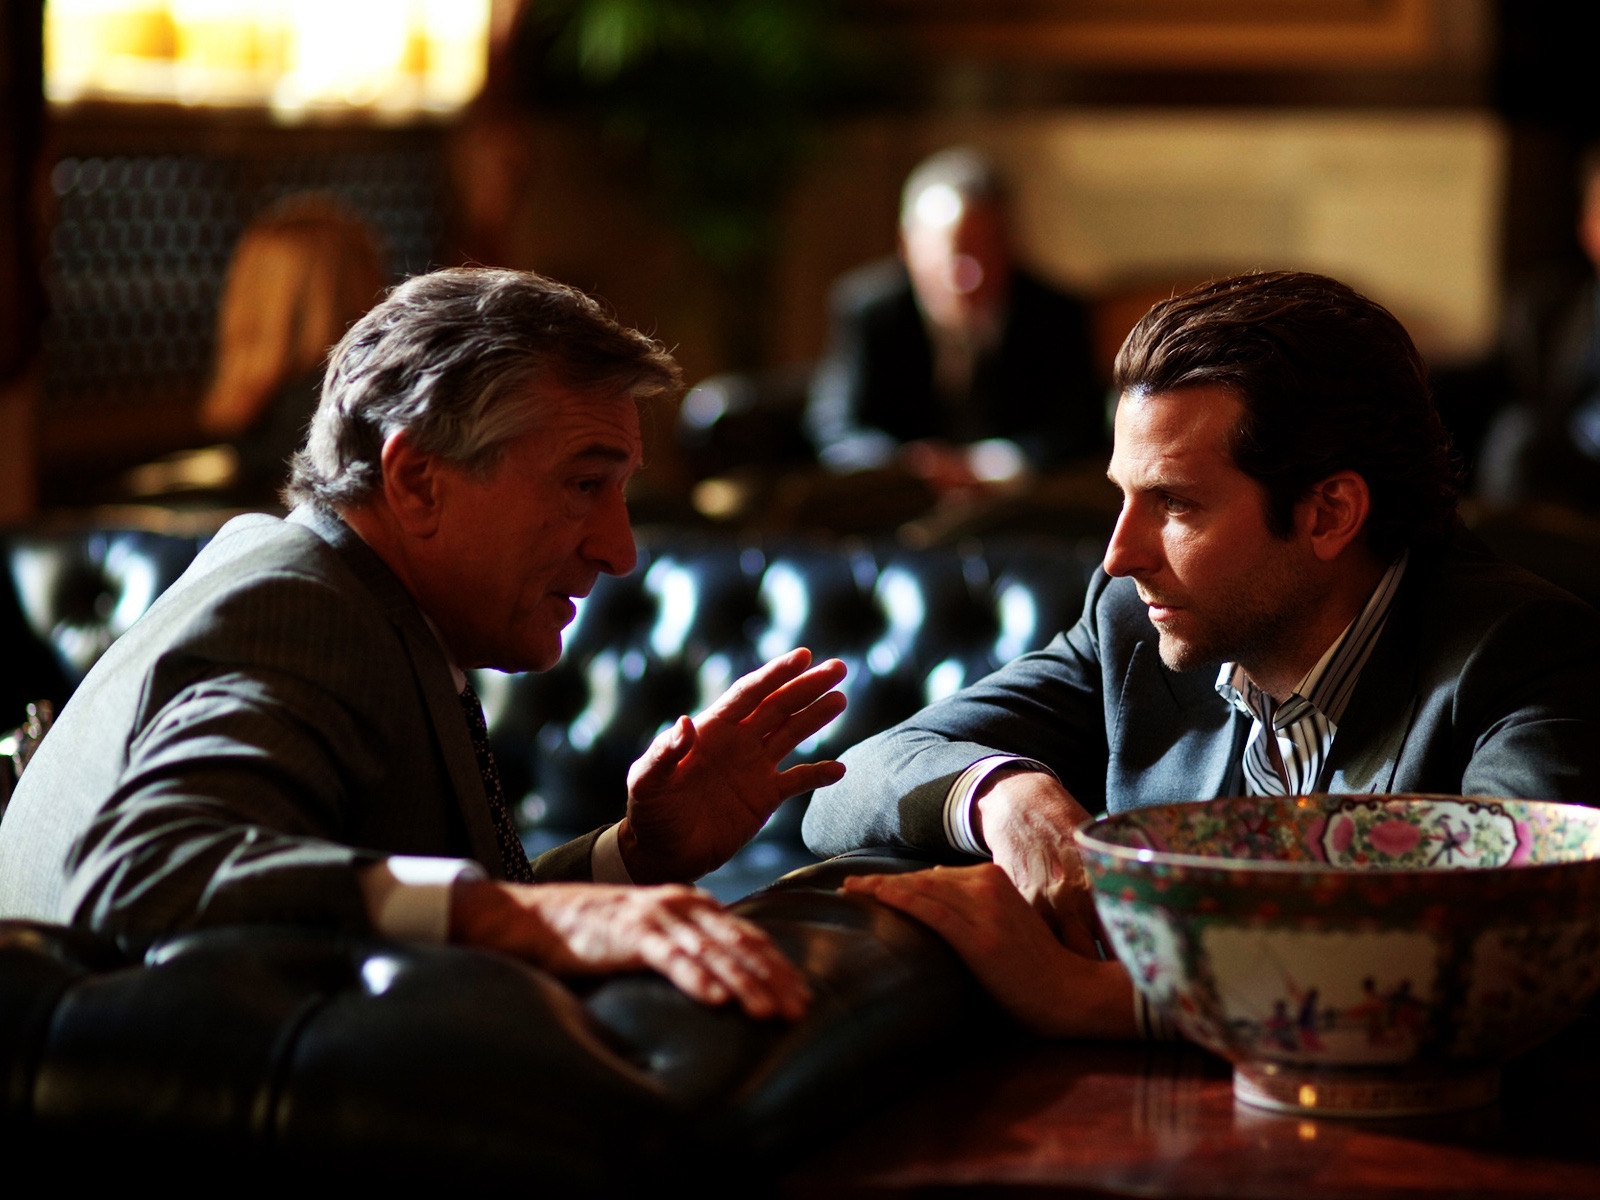 Bradley Cooper and Robert De Niro for 1600 x 1200 resolution